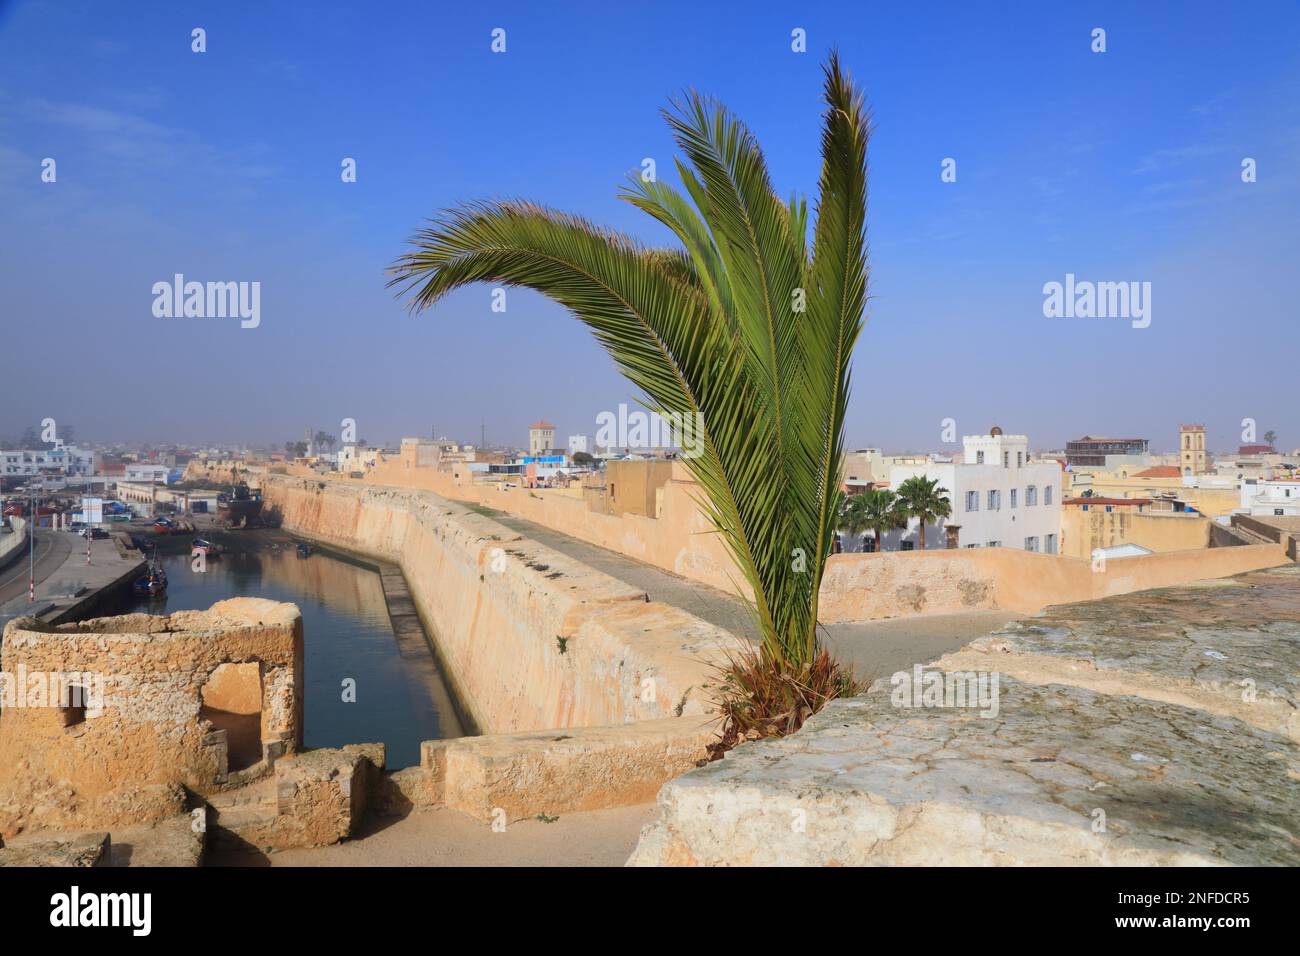 El Jadida città, Marocco. Punto di riferimento del Marocco - ex città delle colonie portoghesi, patrimonio dell'umanità dell'UNESCO. Foto Stock